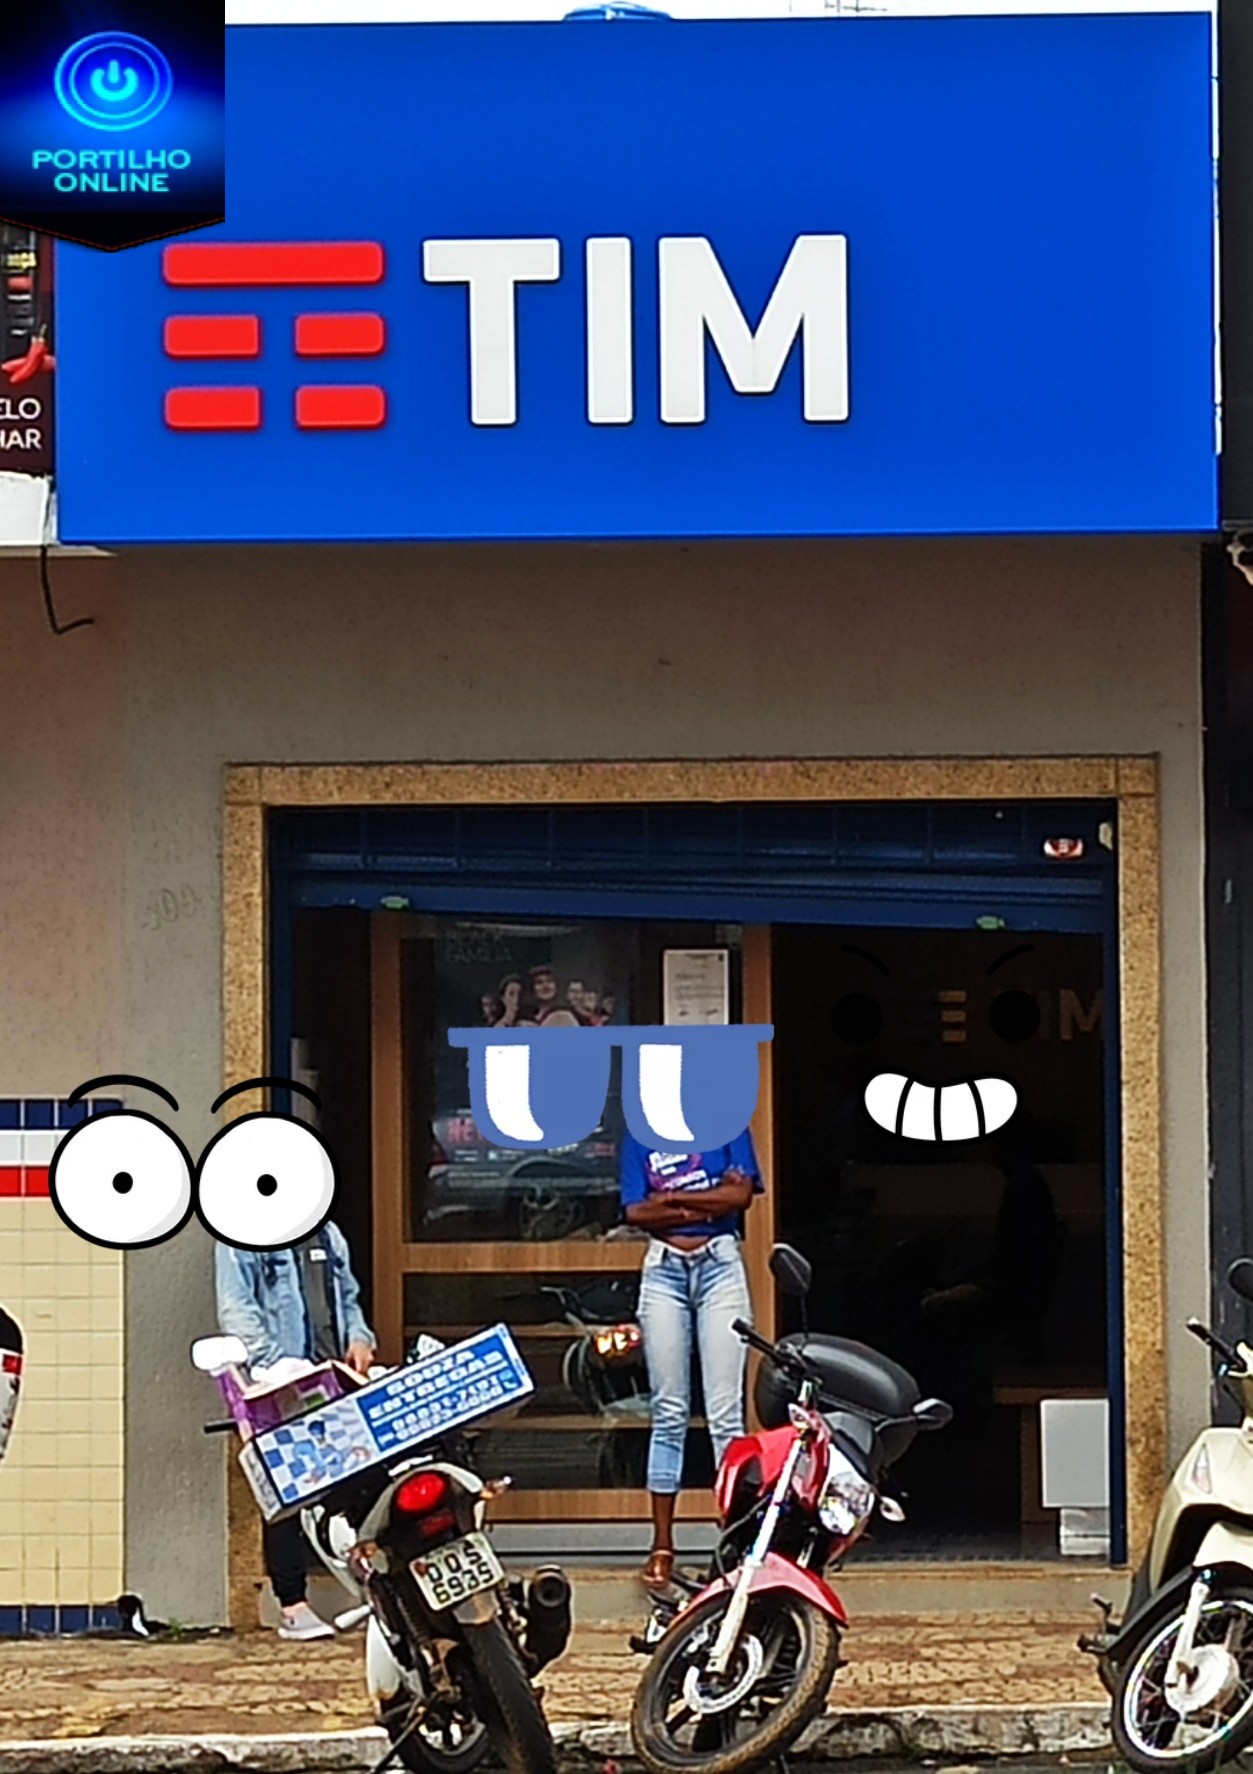 👉👎🧐😡😠🤬🤨📲📱 Boa tarde portilho, quero fazer uma denúncia anônima sobre uma loja filial da Tim